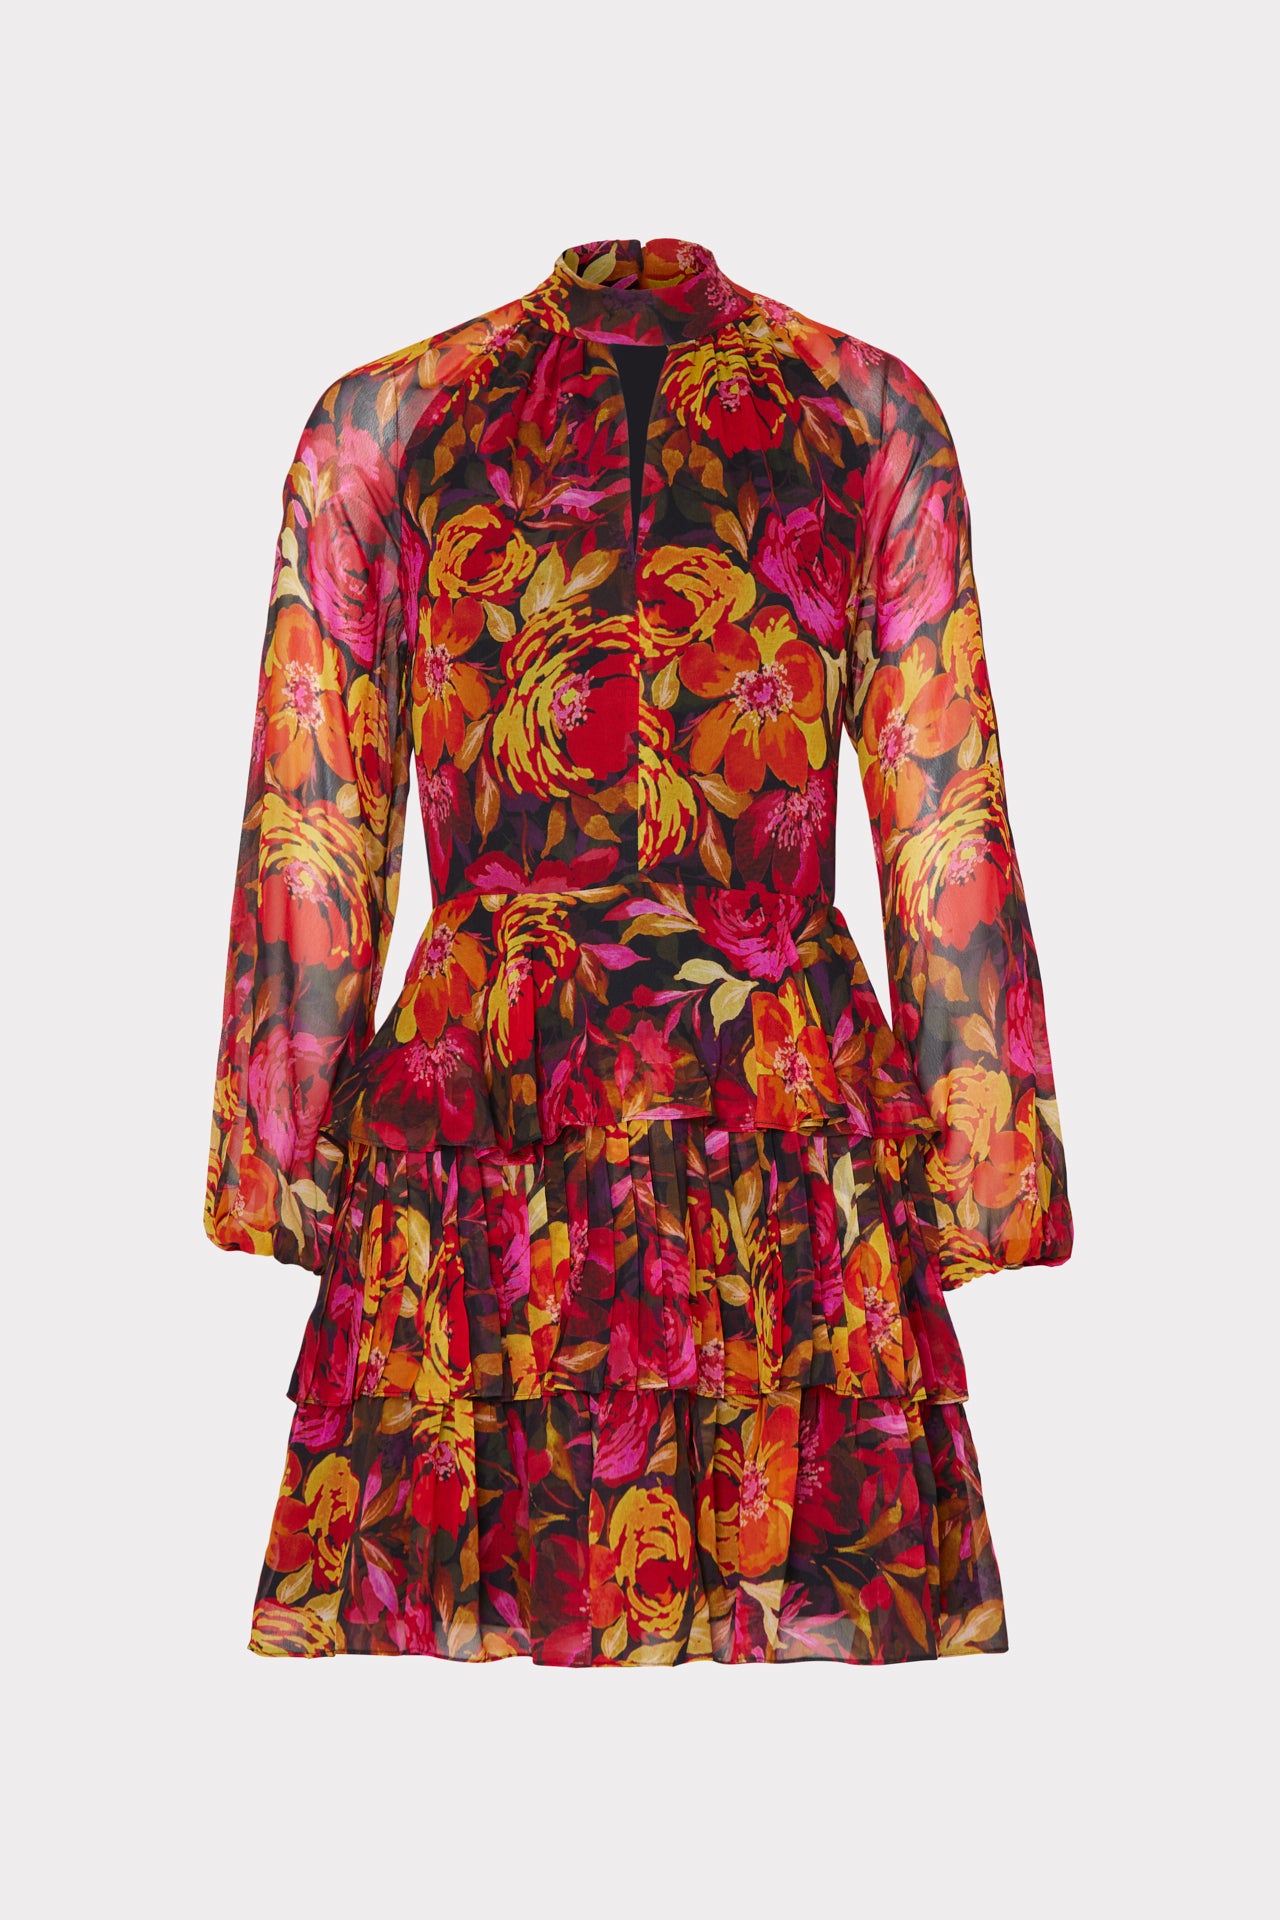 Iyla Fall Foliage Print Dress